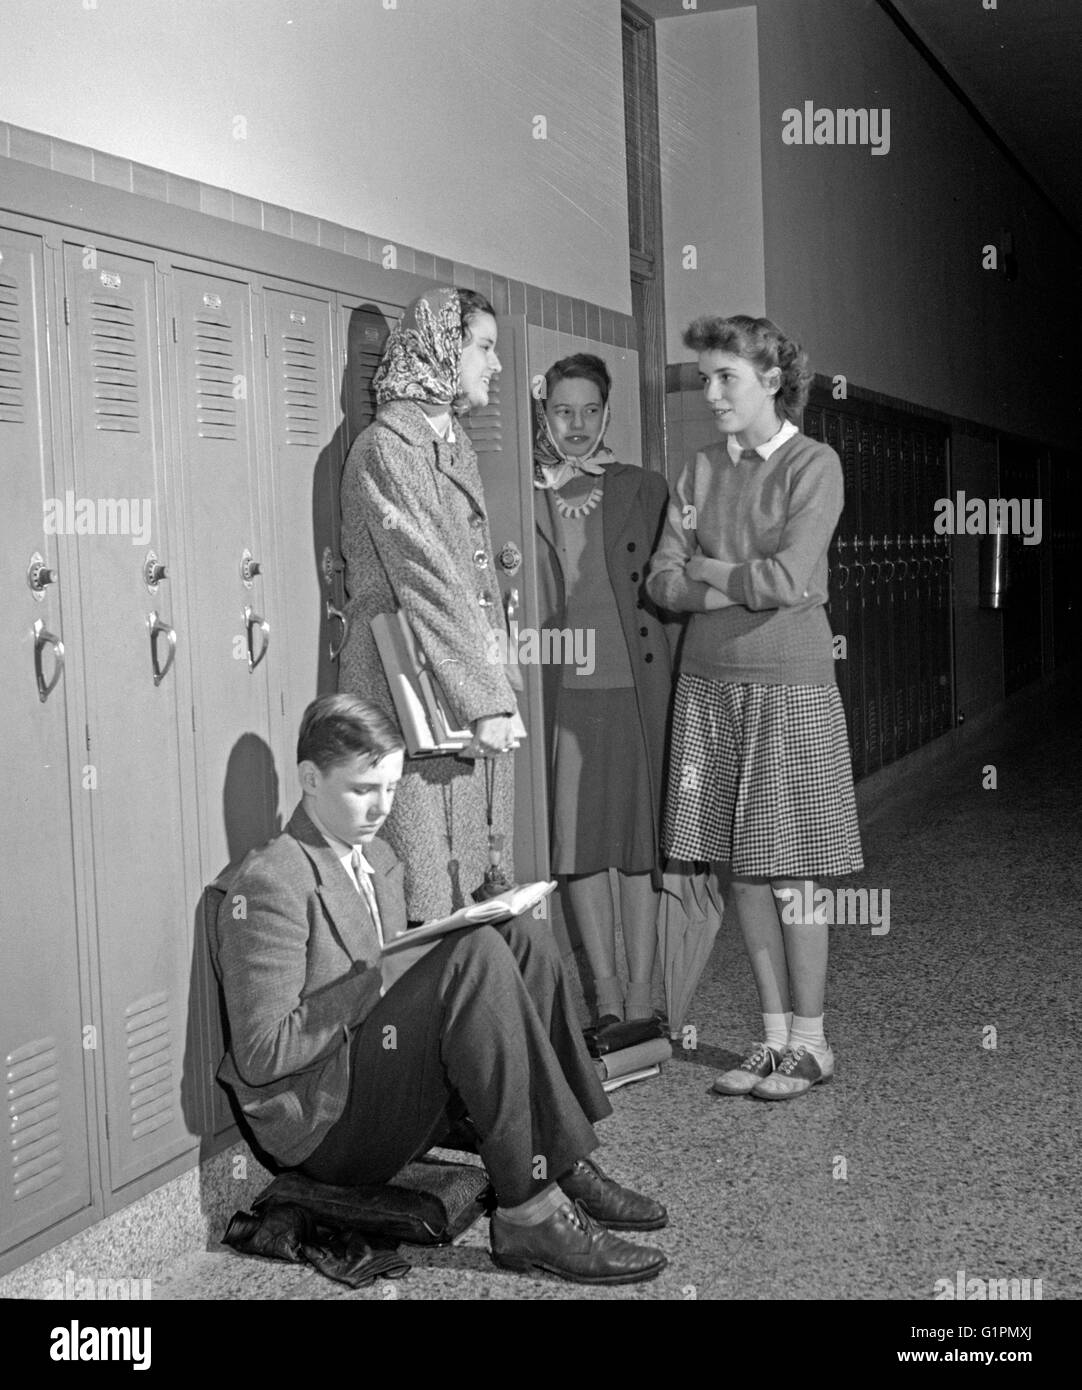 Gli studenti delle scuole superiori, 1943. Gli studenti di Woodrow Wilson High School di Washington, D.C. Fotografia di Esther Bubley, 1943. Foto Stock